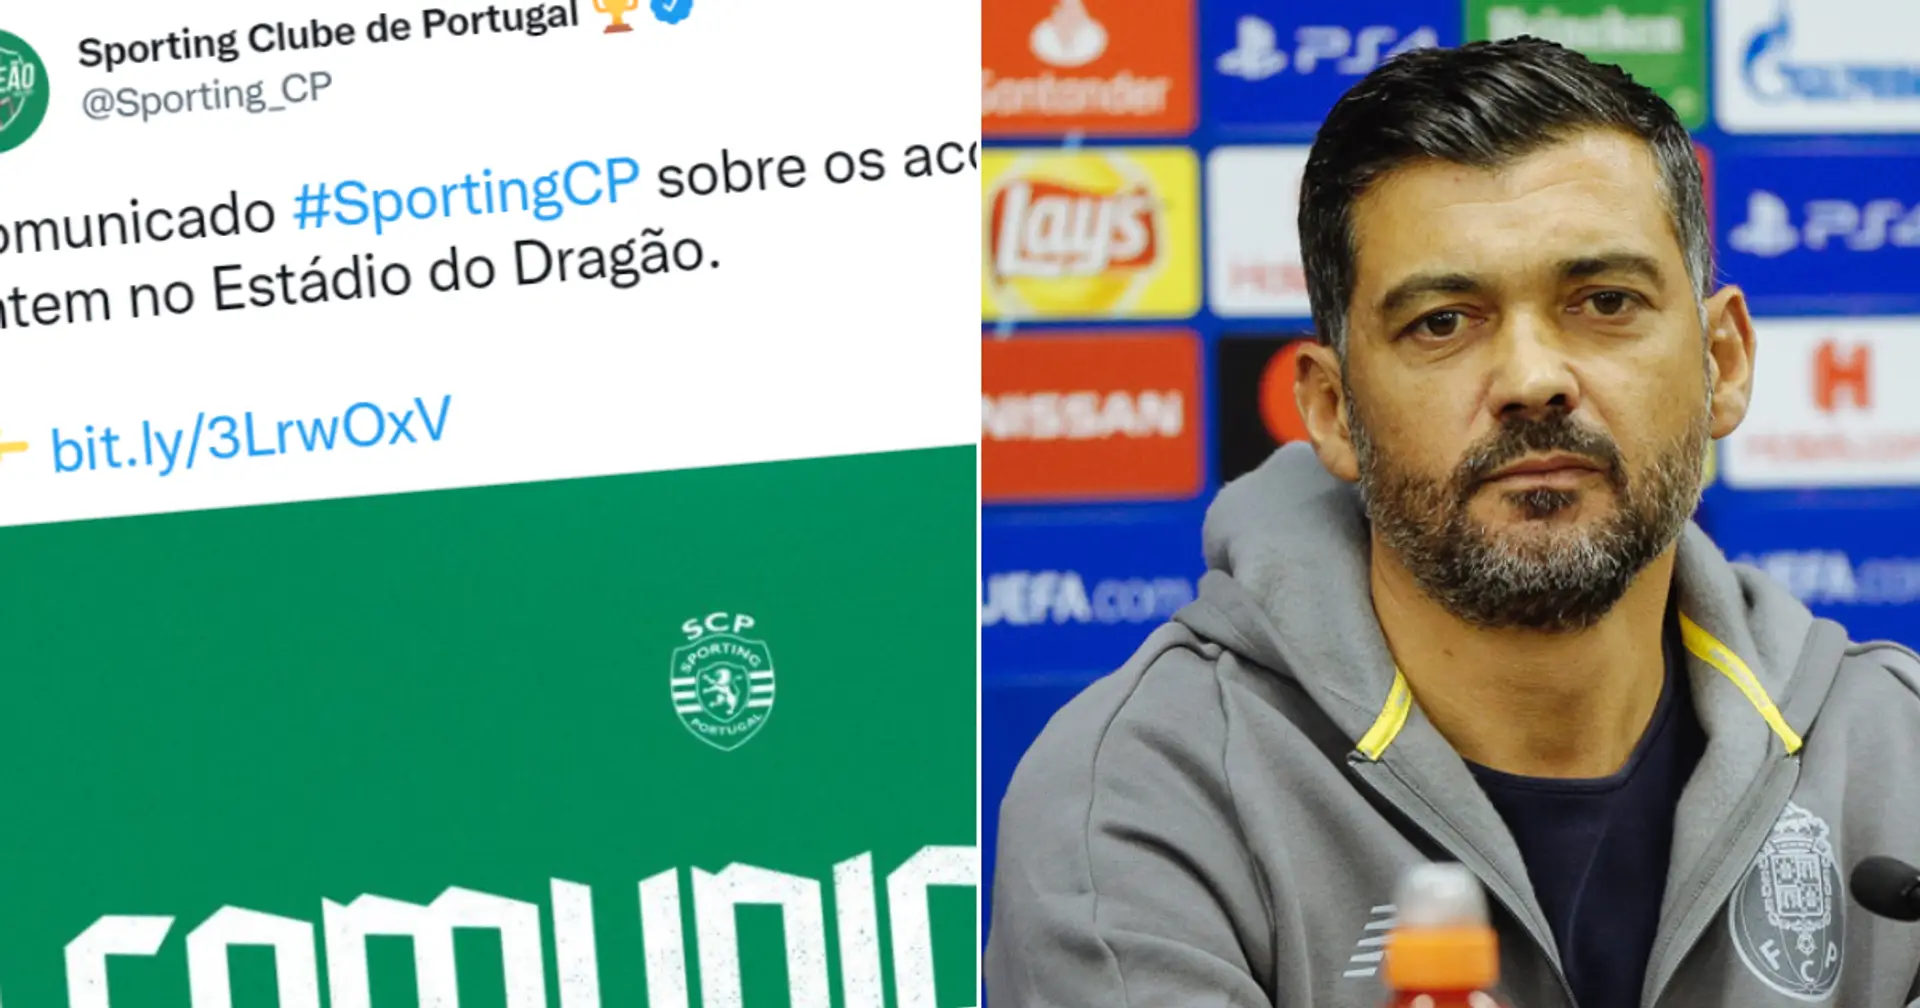 Sporting CP reicht offizielle Beschwerde gegen Porto wegen "Diebstahls von Handy und Brieftasche" ein